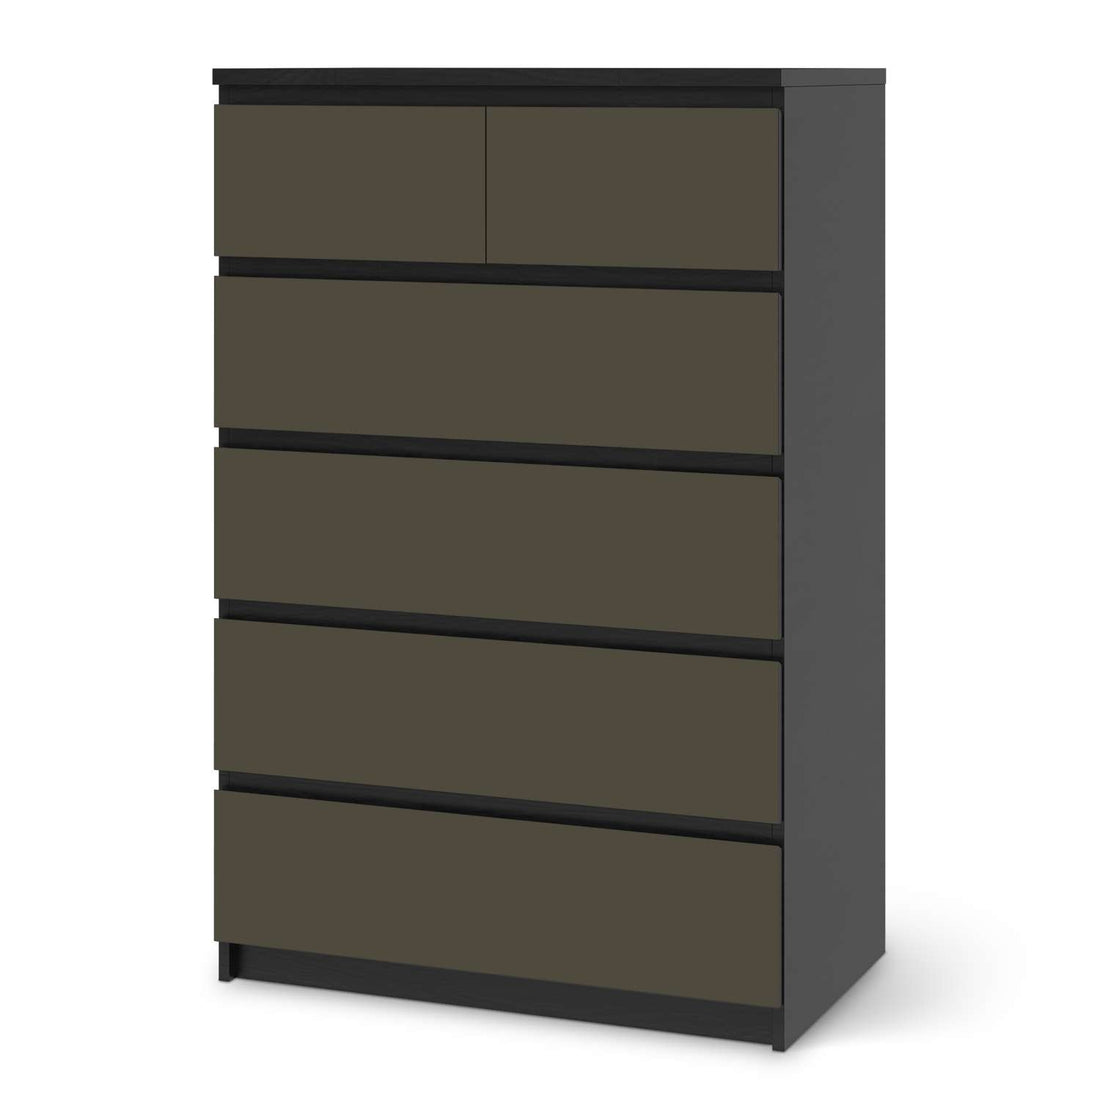 Möbel Klebefolie Braungrau Dark - IKEA Malm Kommode 6 Schubladen (hoch) - schwarz